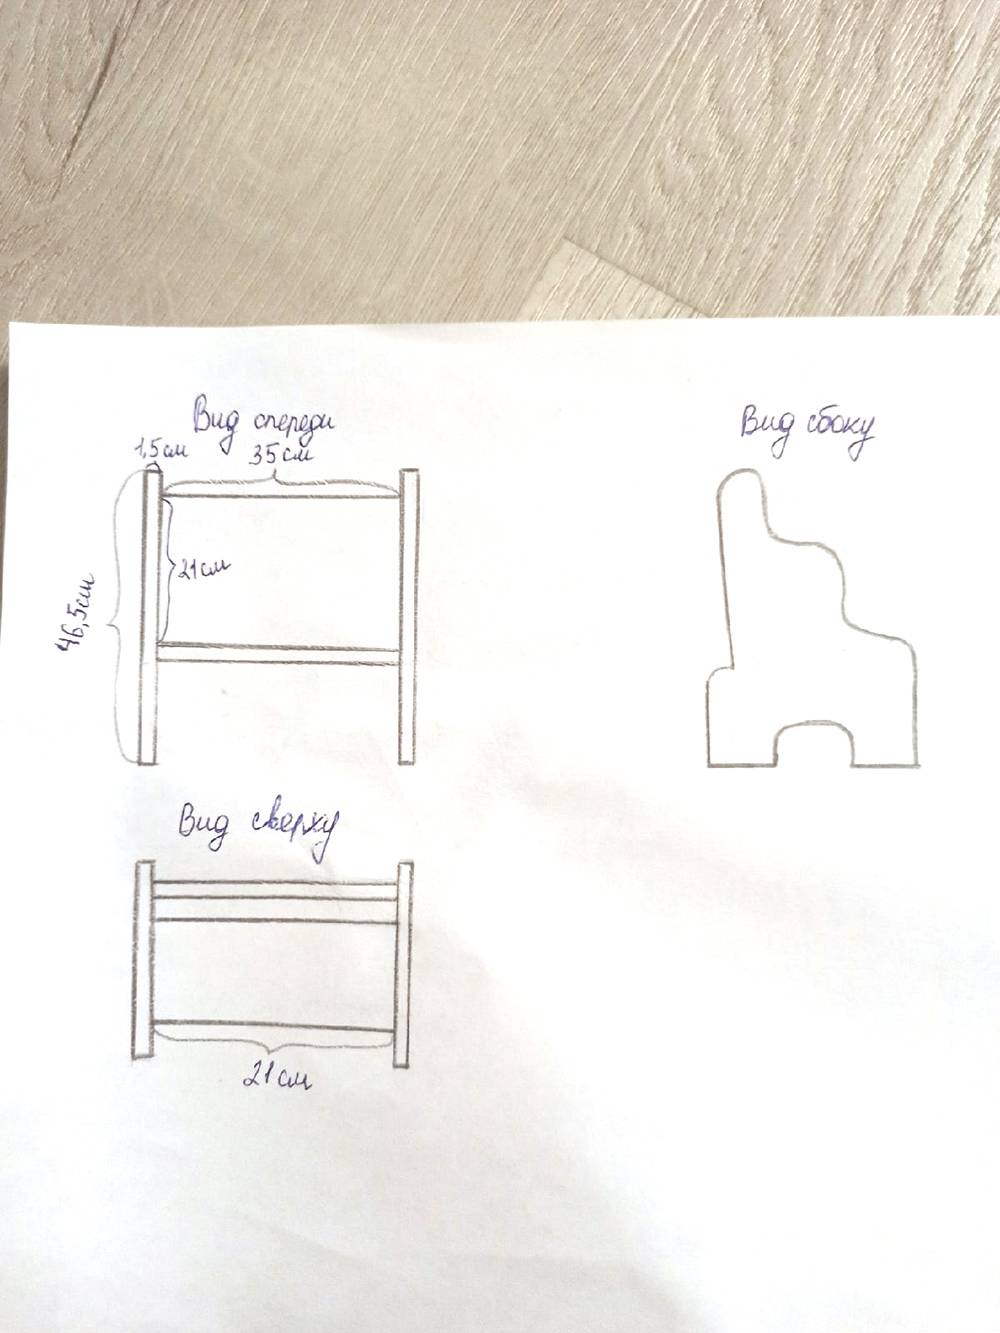 Для примера я сделала чертеж стульчика нашей формы на бумаге